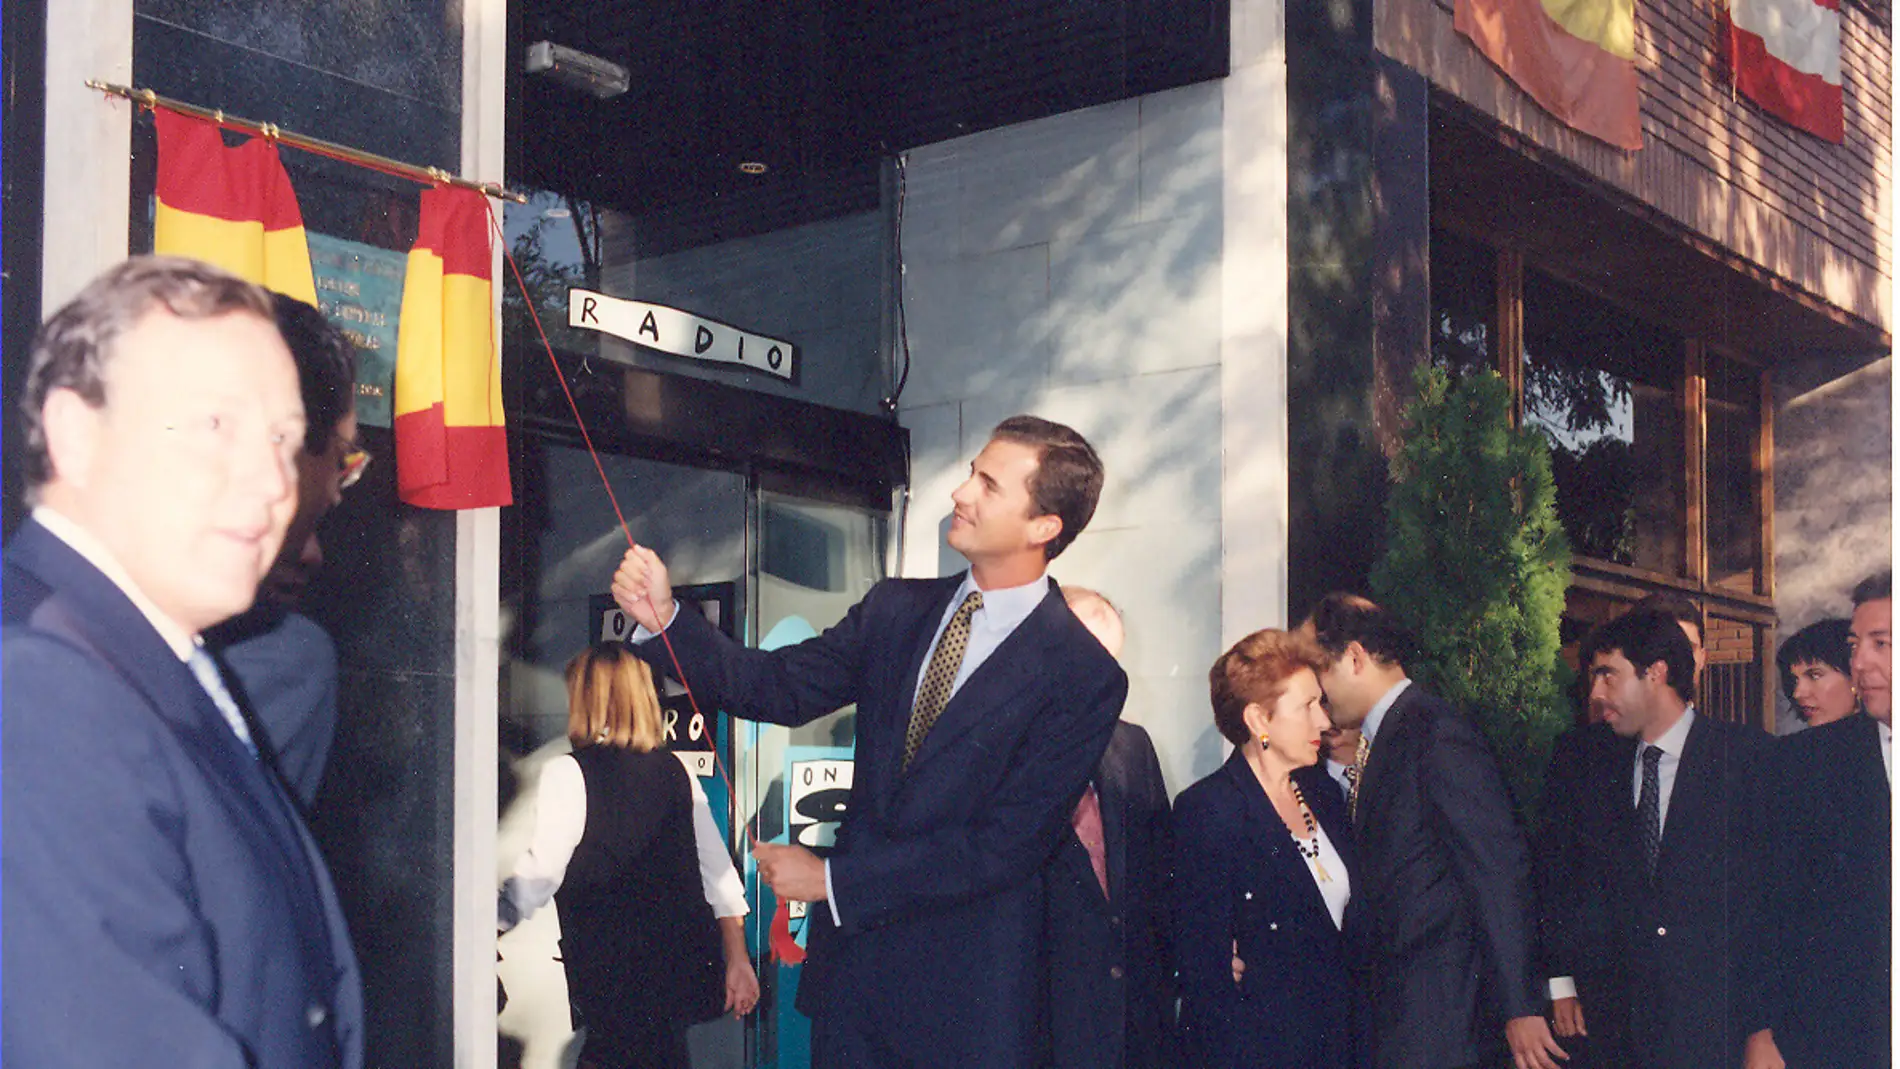 SAR El príncipe Felipe descubre una placa durante la inauguración oficial de la nueva sede 